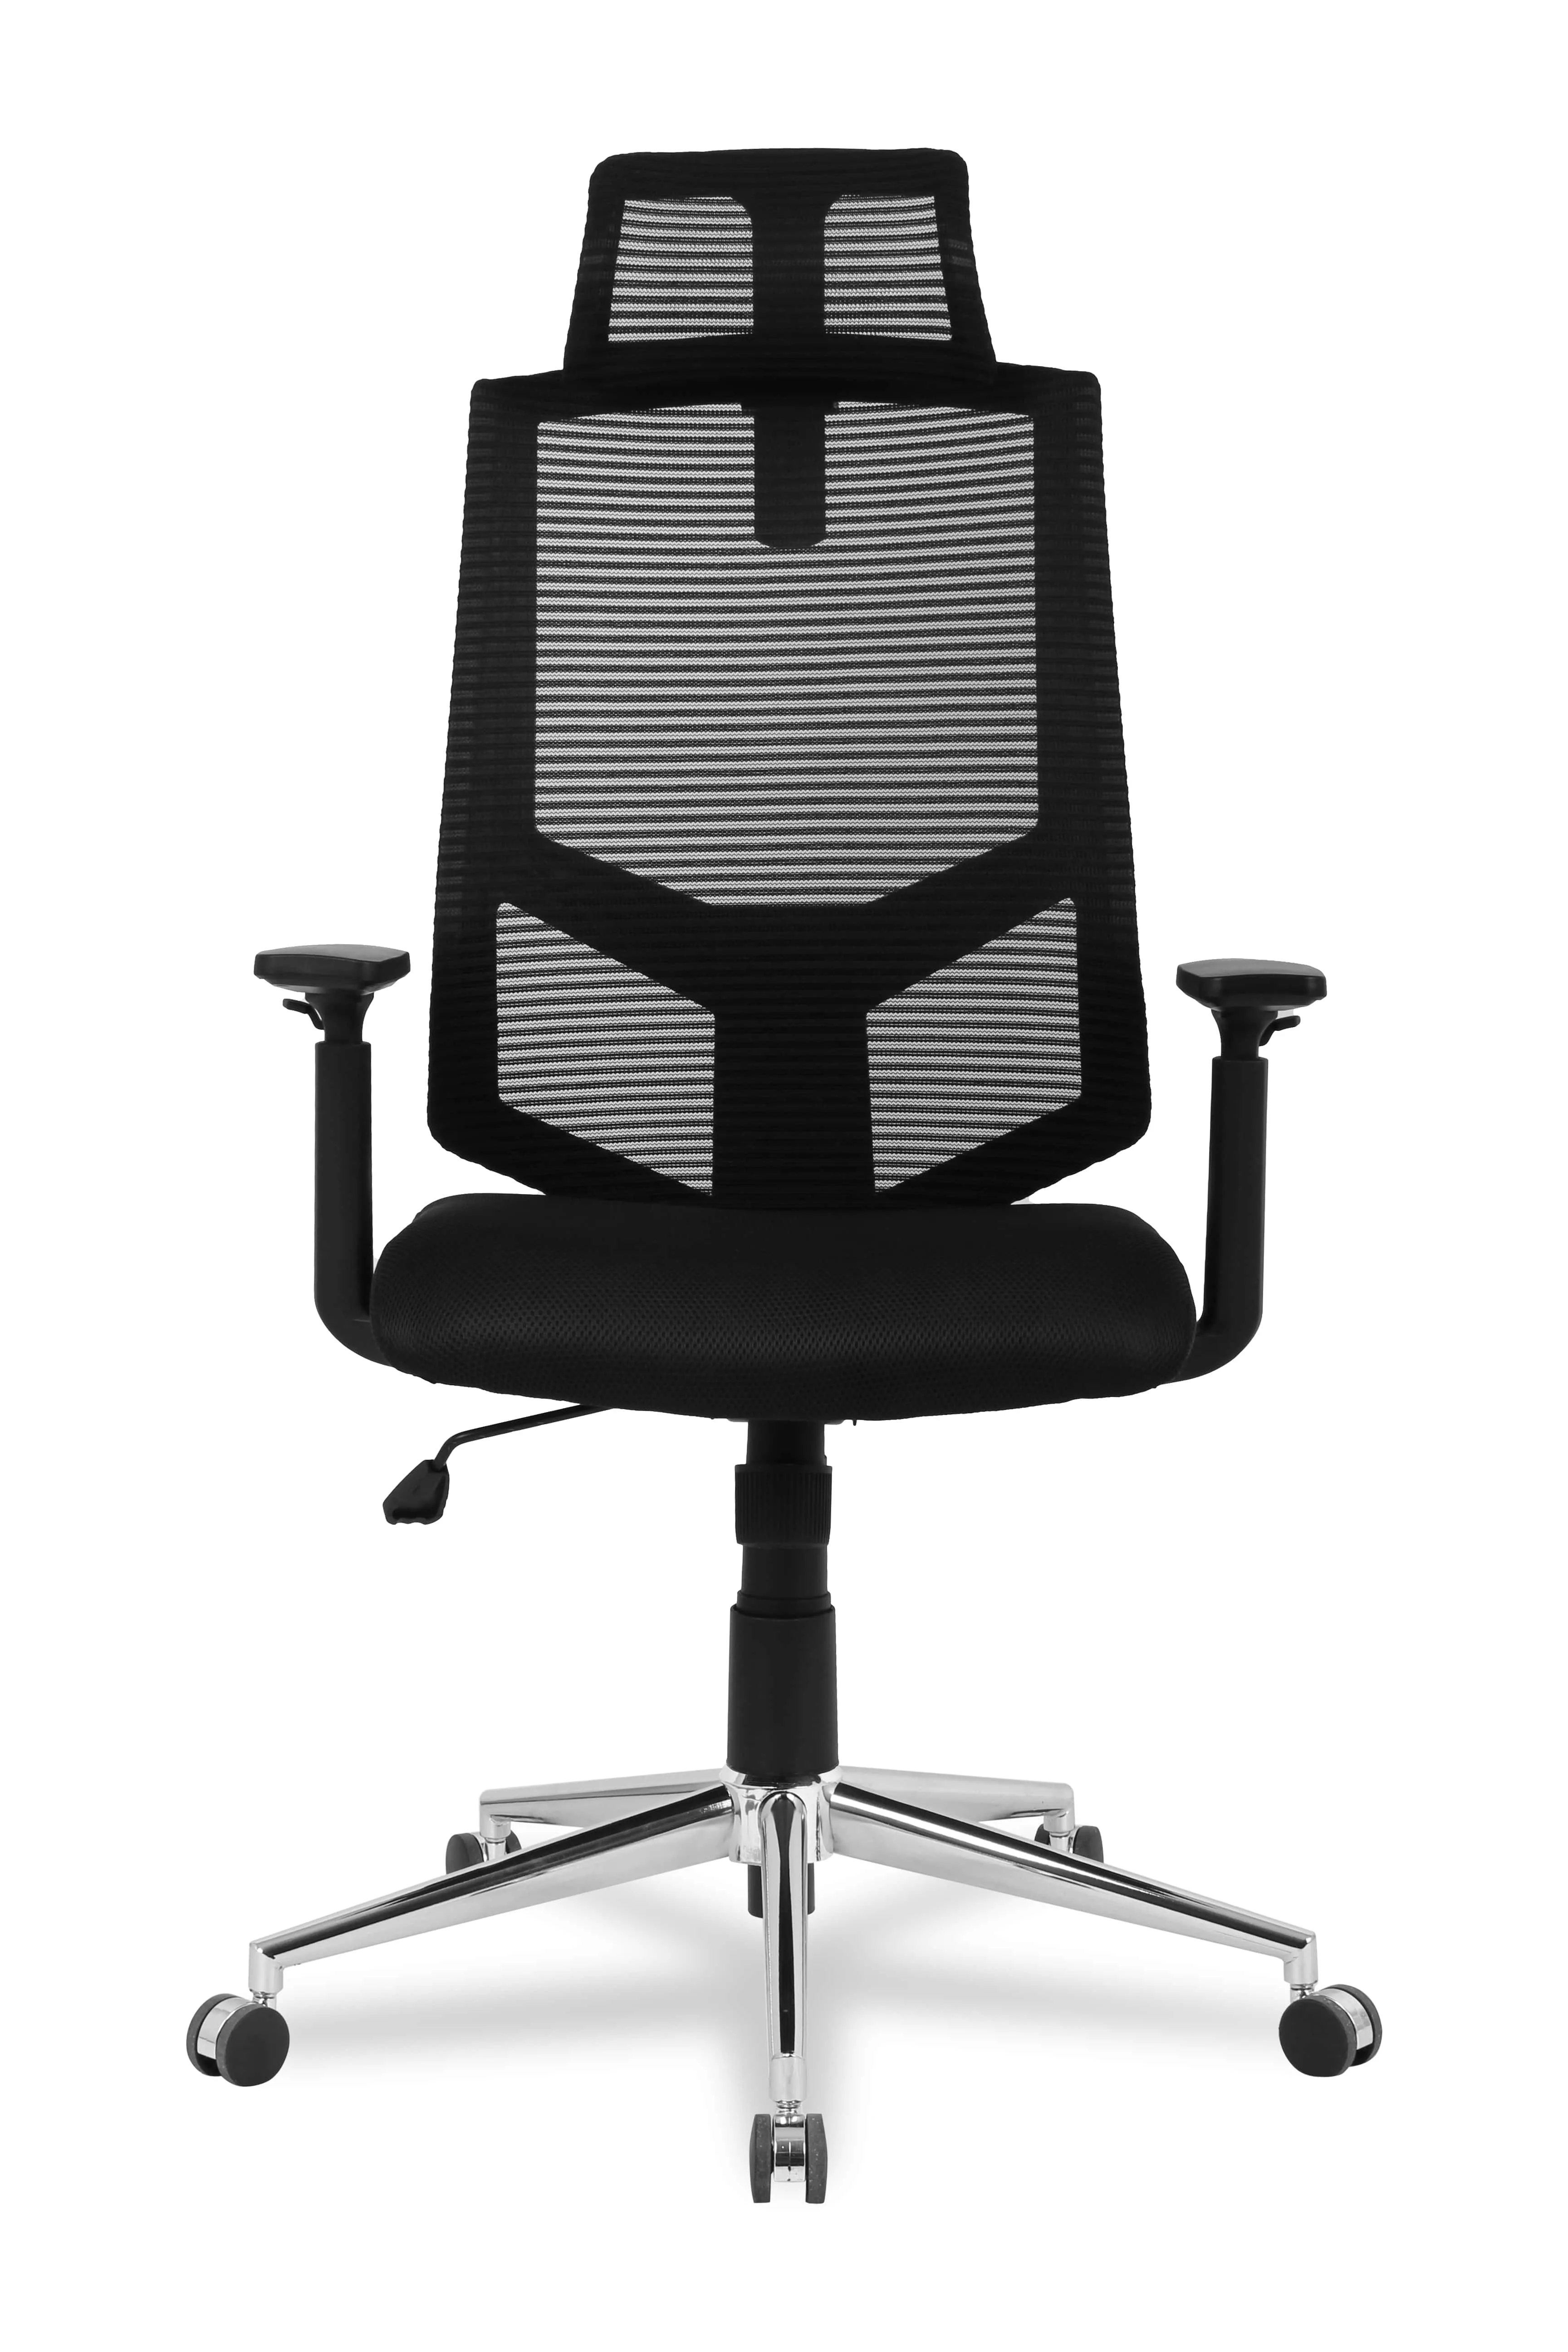 Компьютерное кресло College HLC-1500H Черный